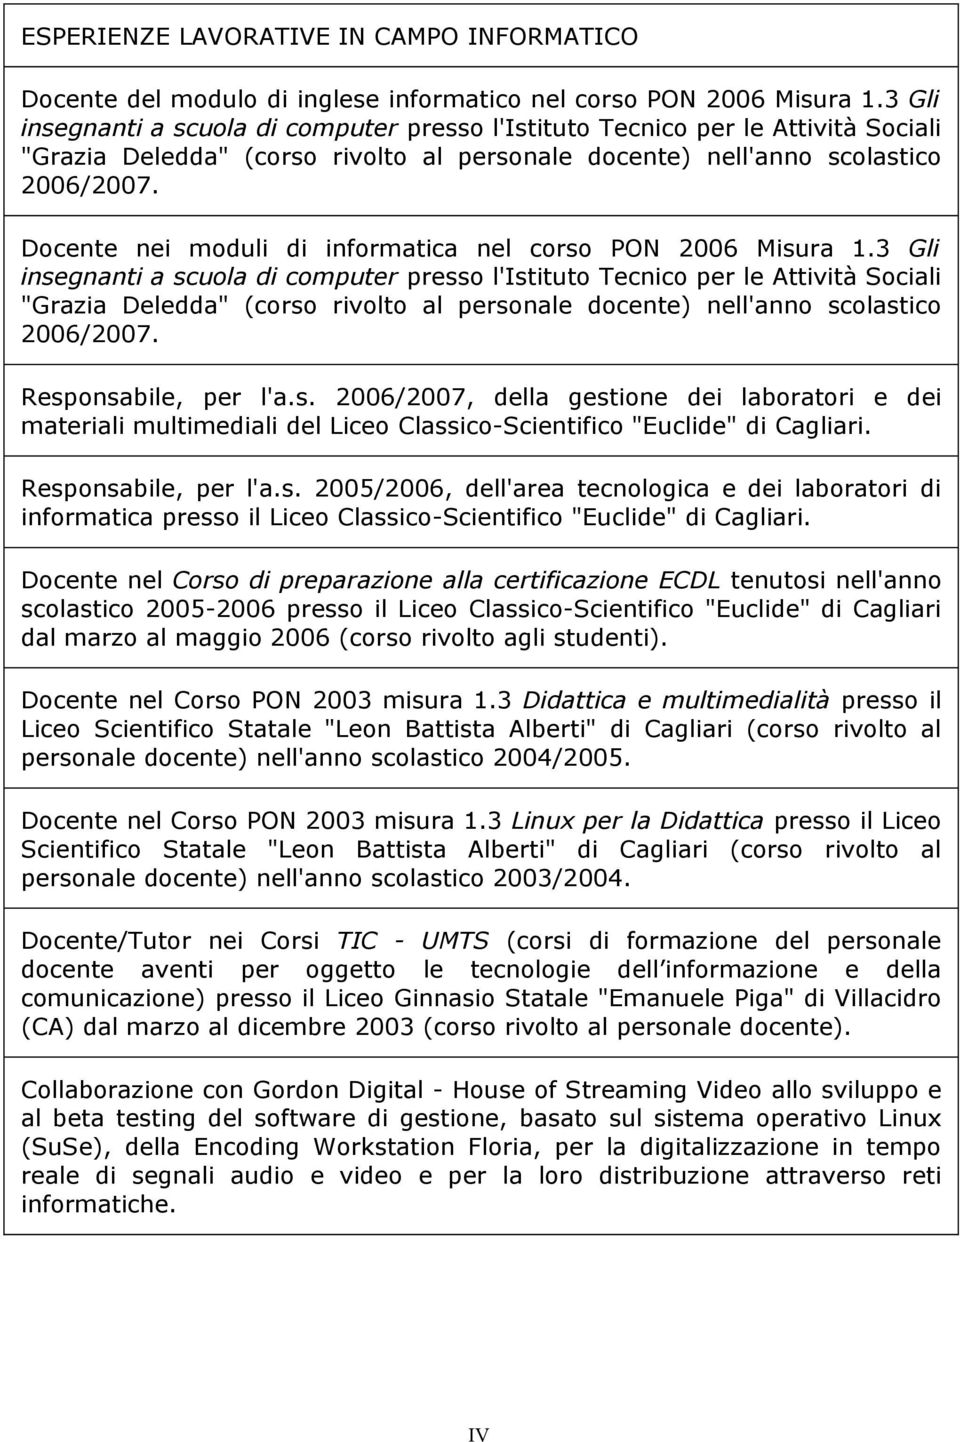 Docente nei moduli di informatica nel corso PON 2006 Misura 1. Responsabile, per l'a.s. 2006/2007, della gestione dei laboratori e dei materiali multimediali del Liceo Classico-Scientifico "Euclide" di Cagliari.